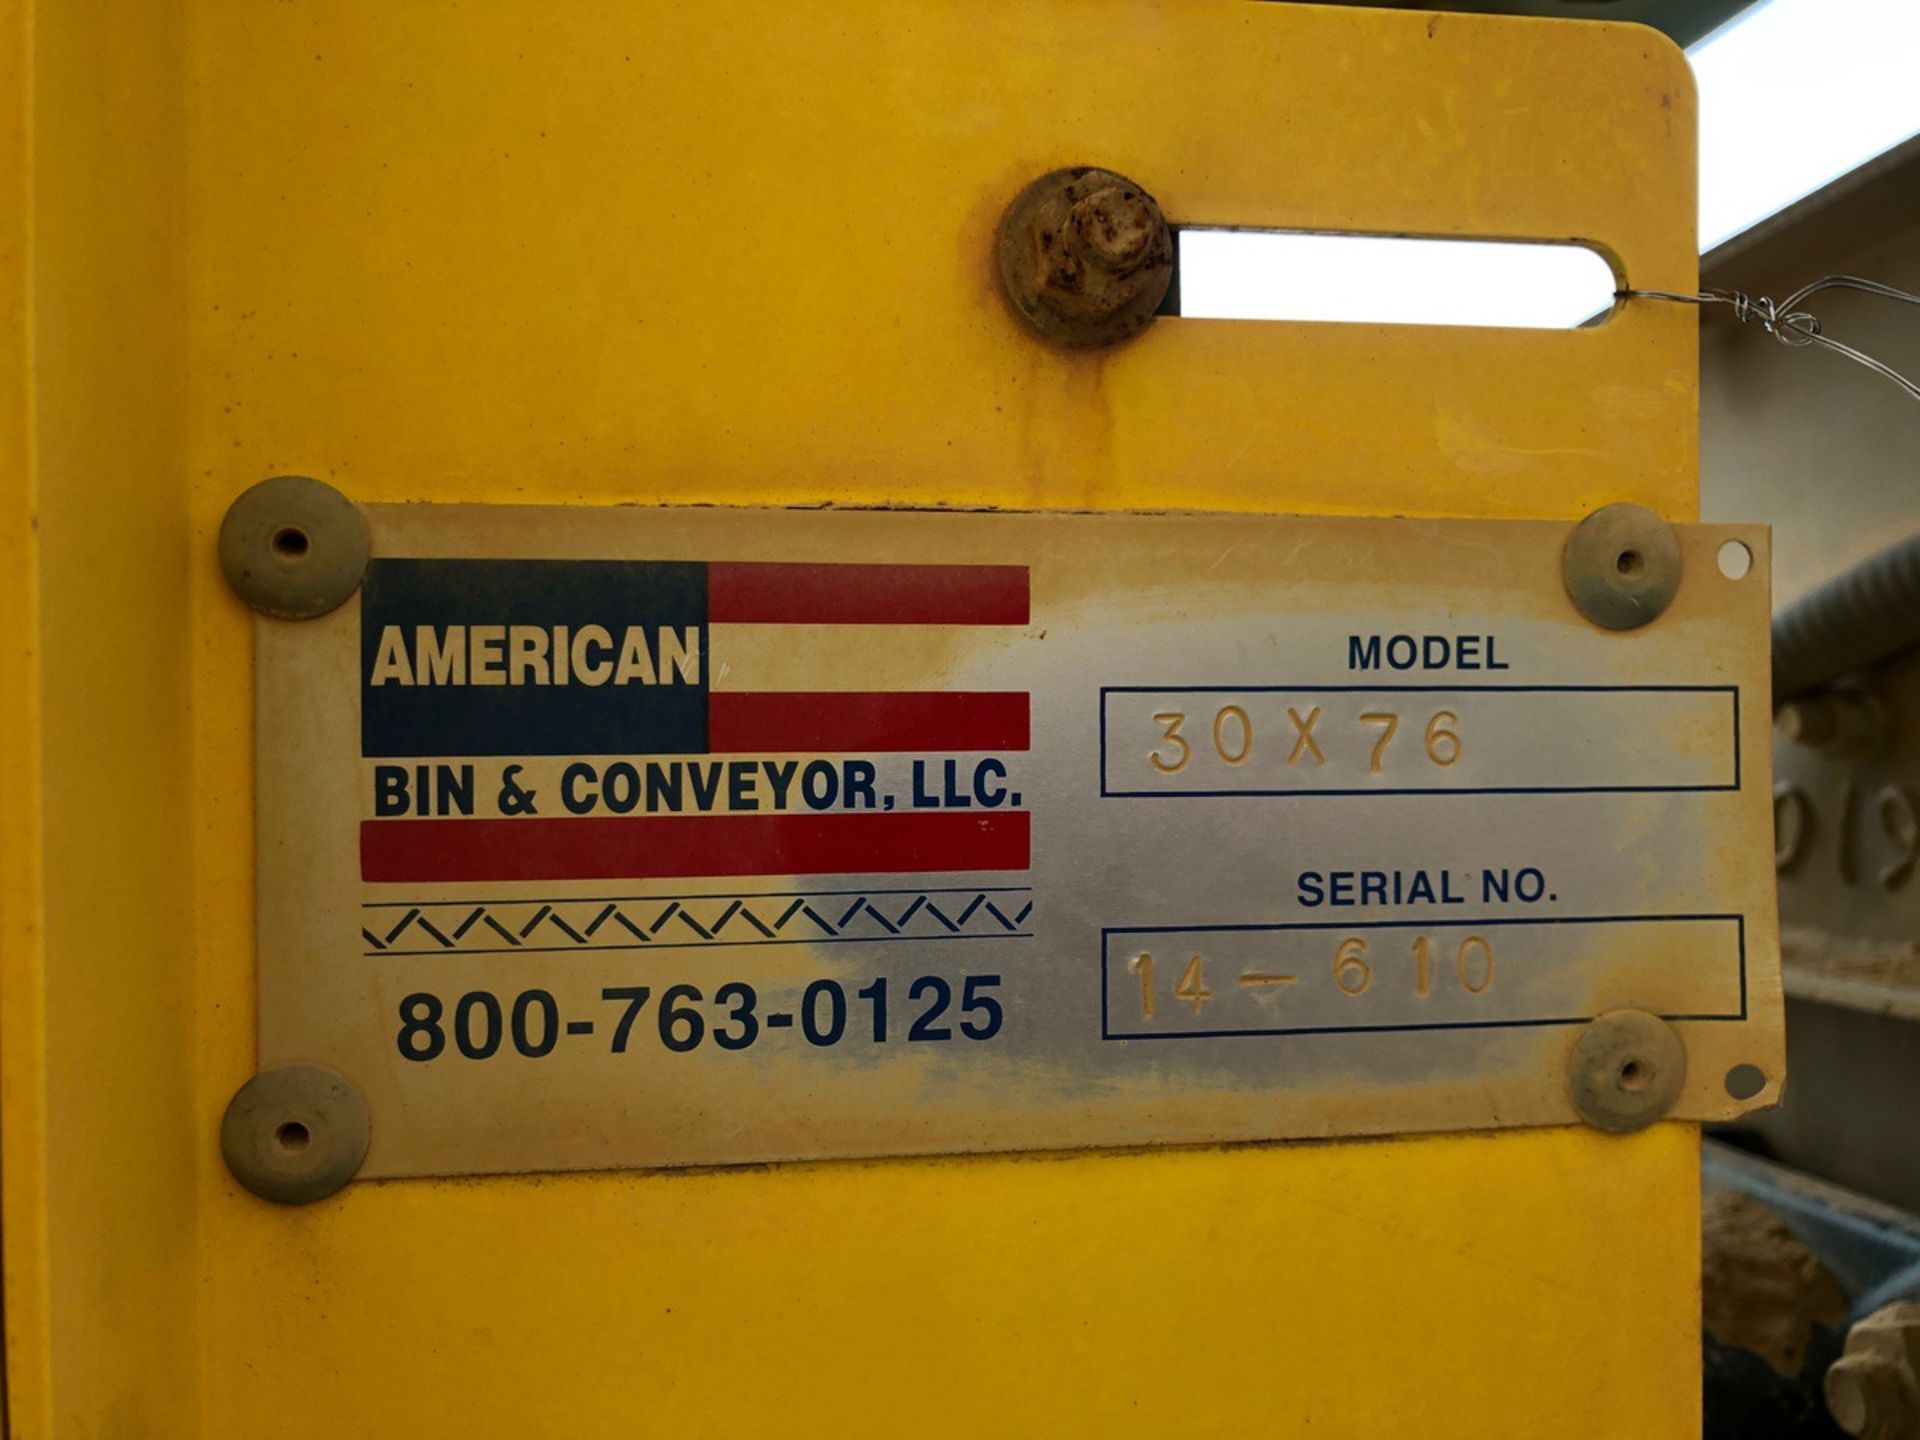 American Bin & Conveyor Model 30x76 30" x 75' Power Belt Conveyor, S/N 14-610, (2014) - Subj to Bulk - Image 2 of 2